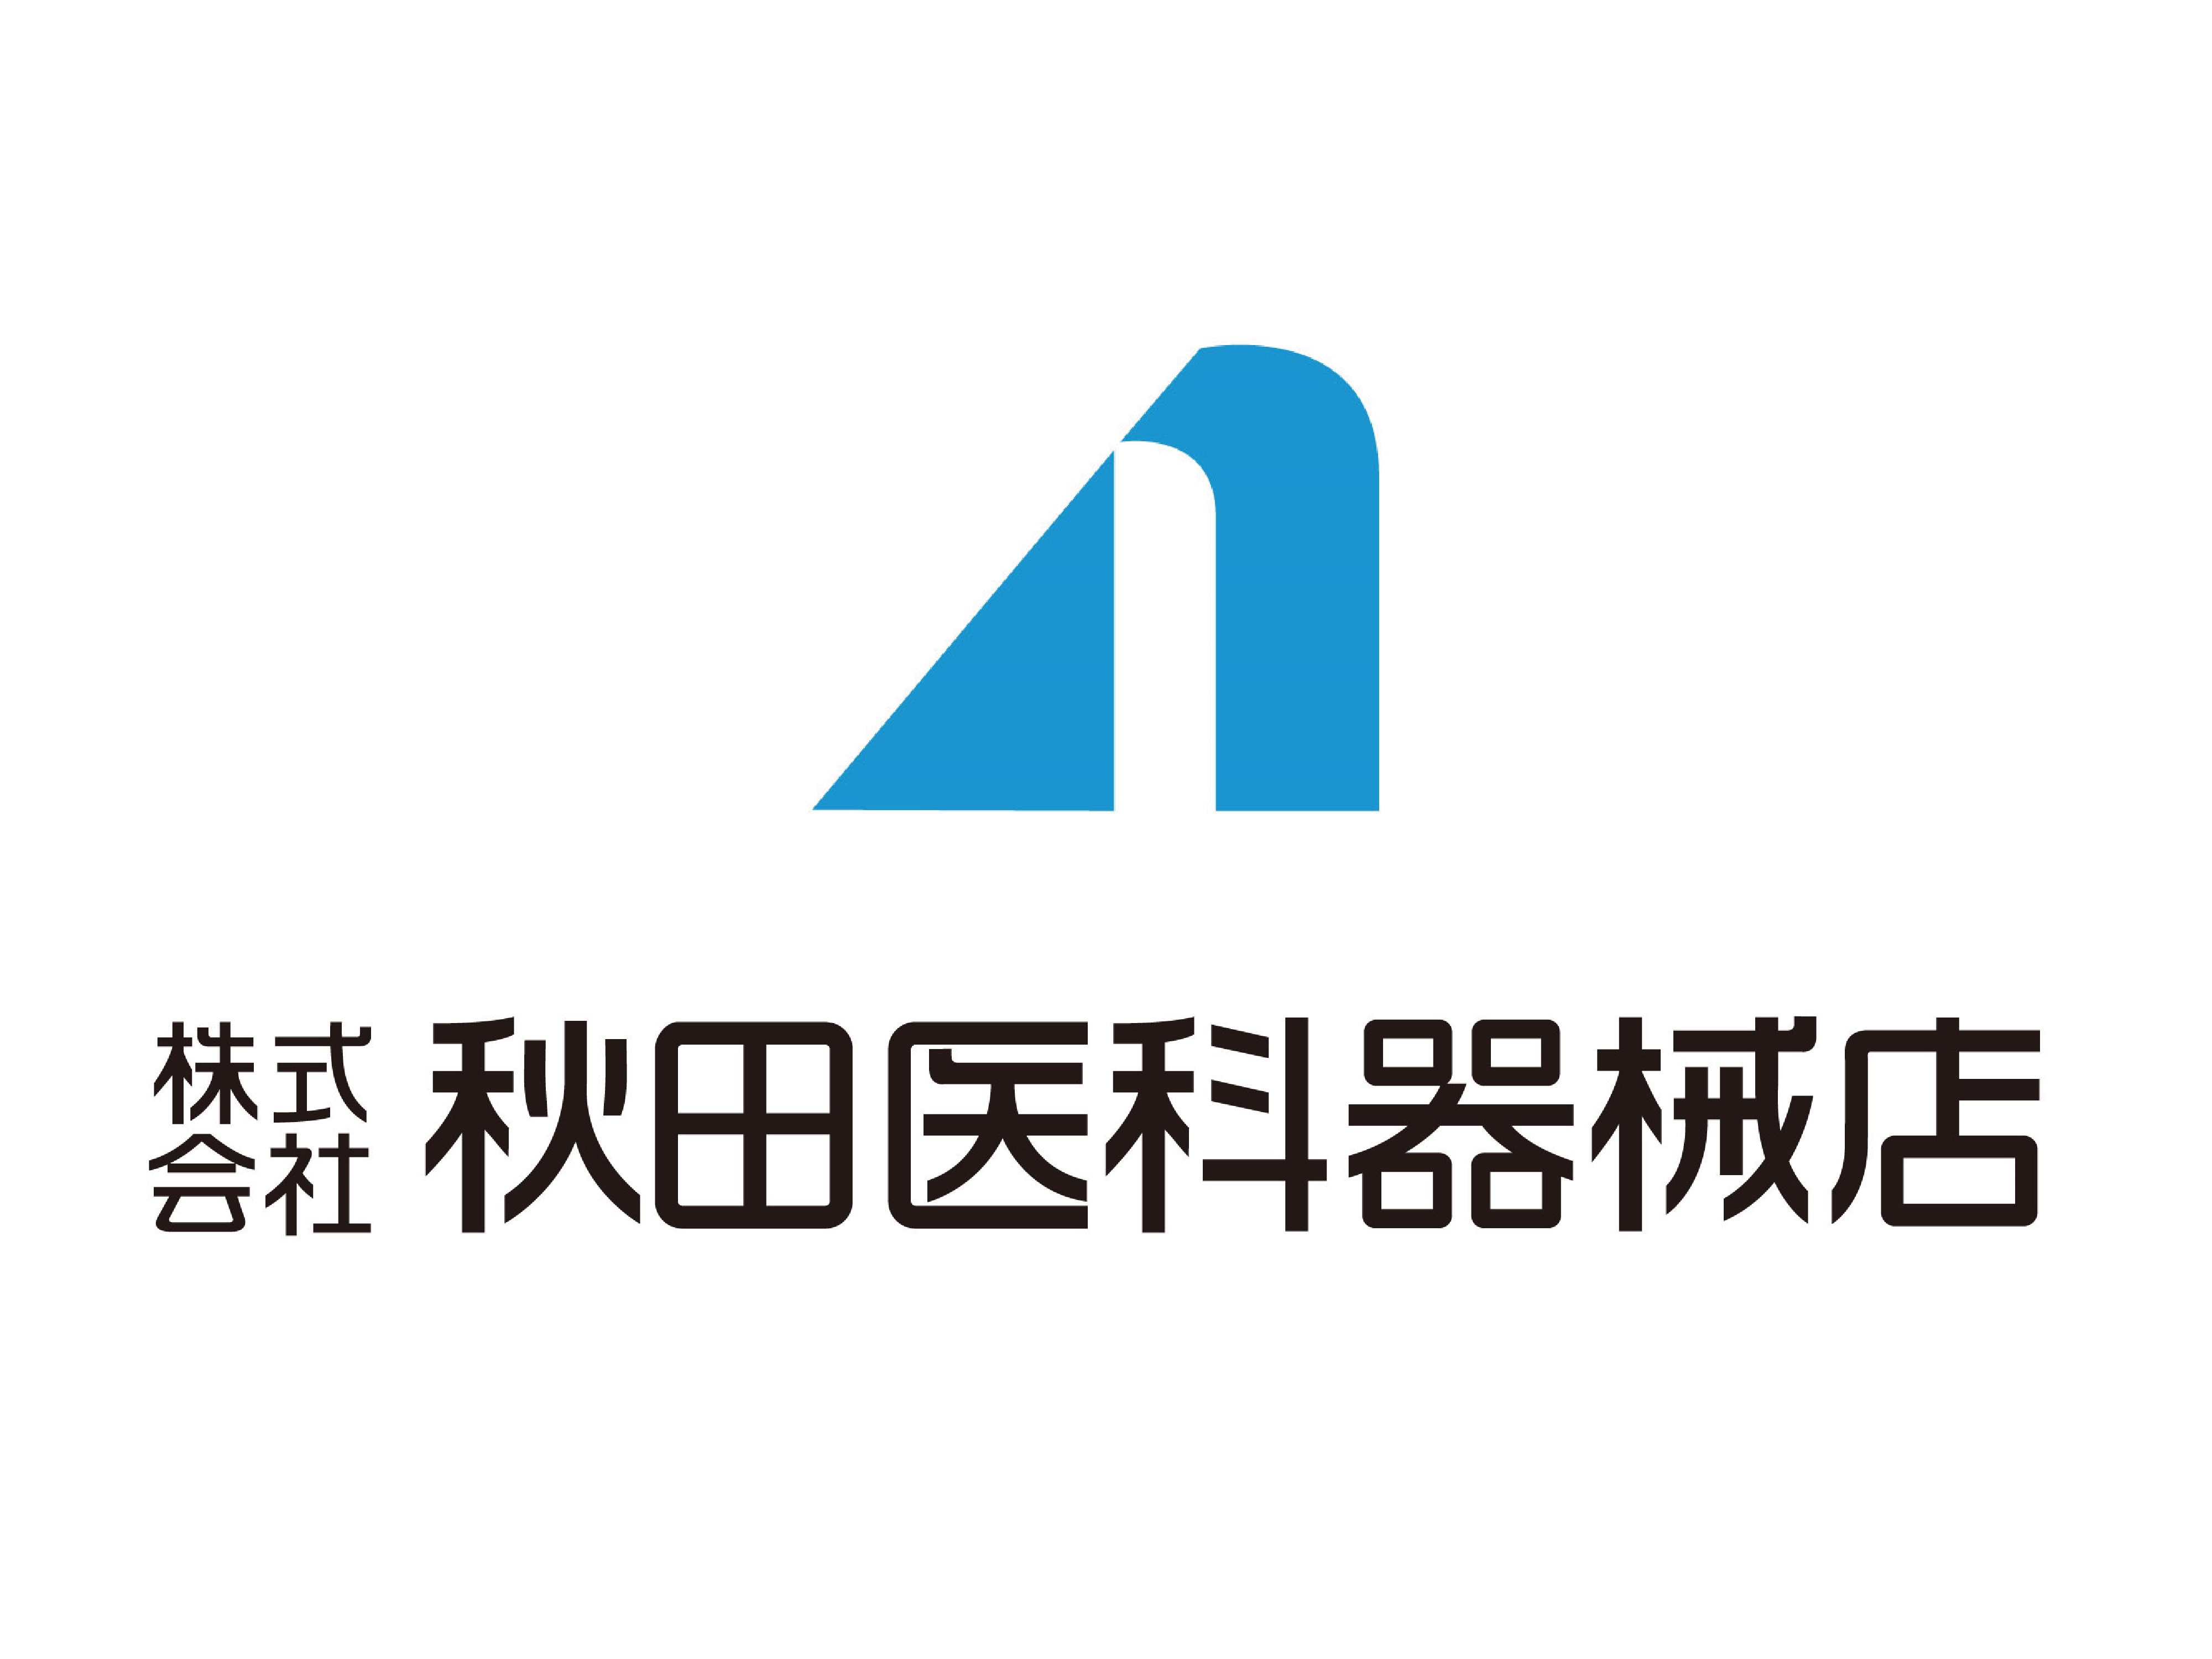 ロゴ:株式会社秋田医科器械店